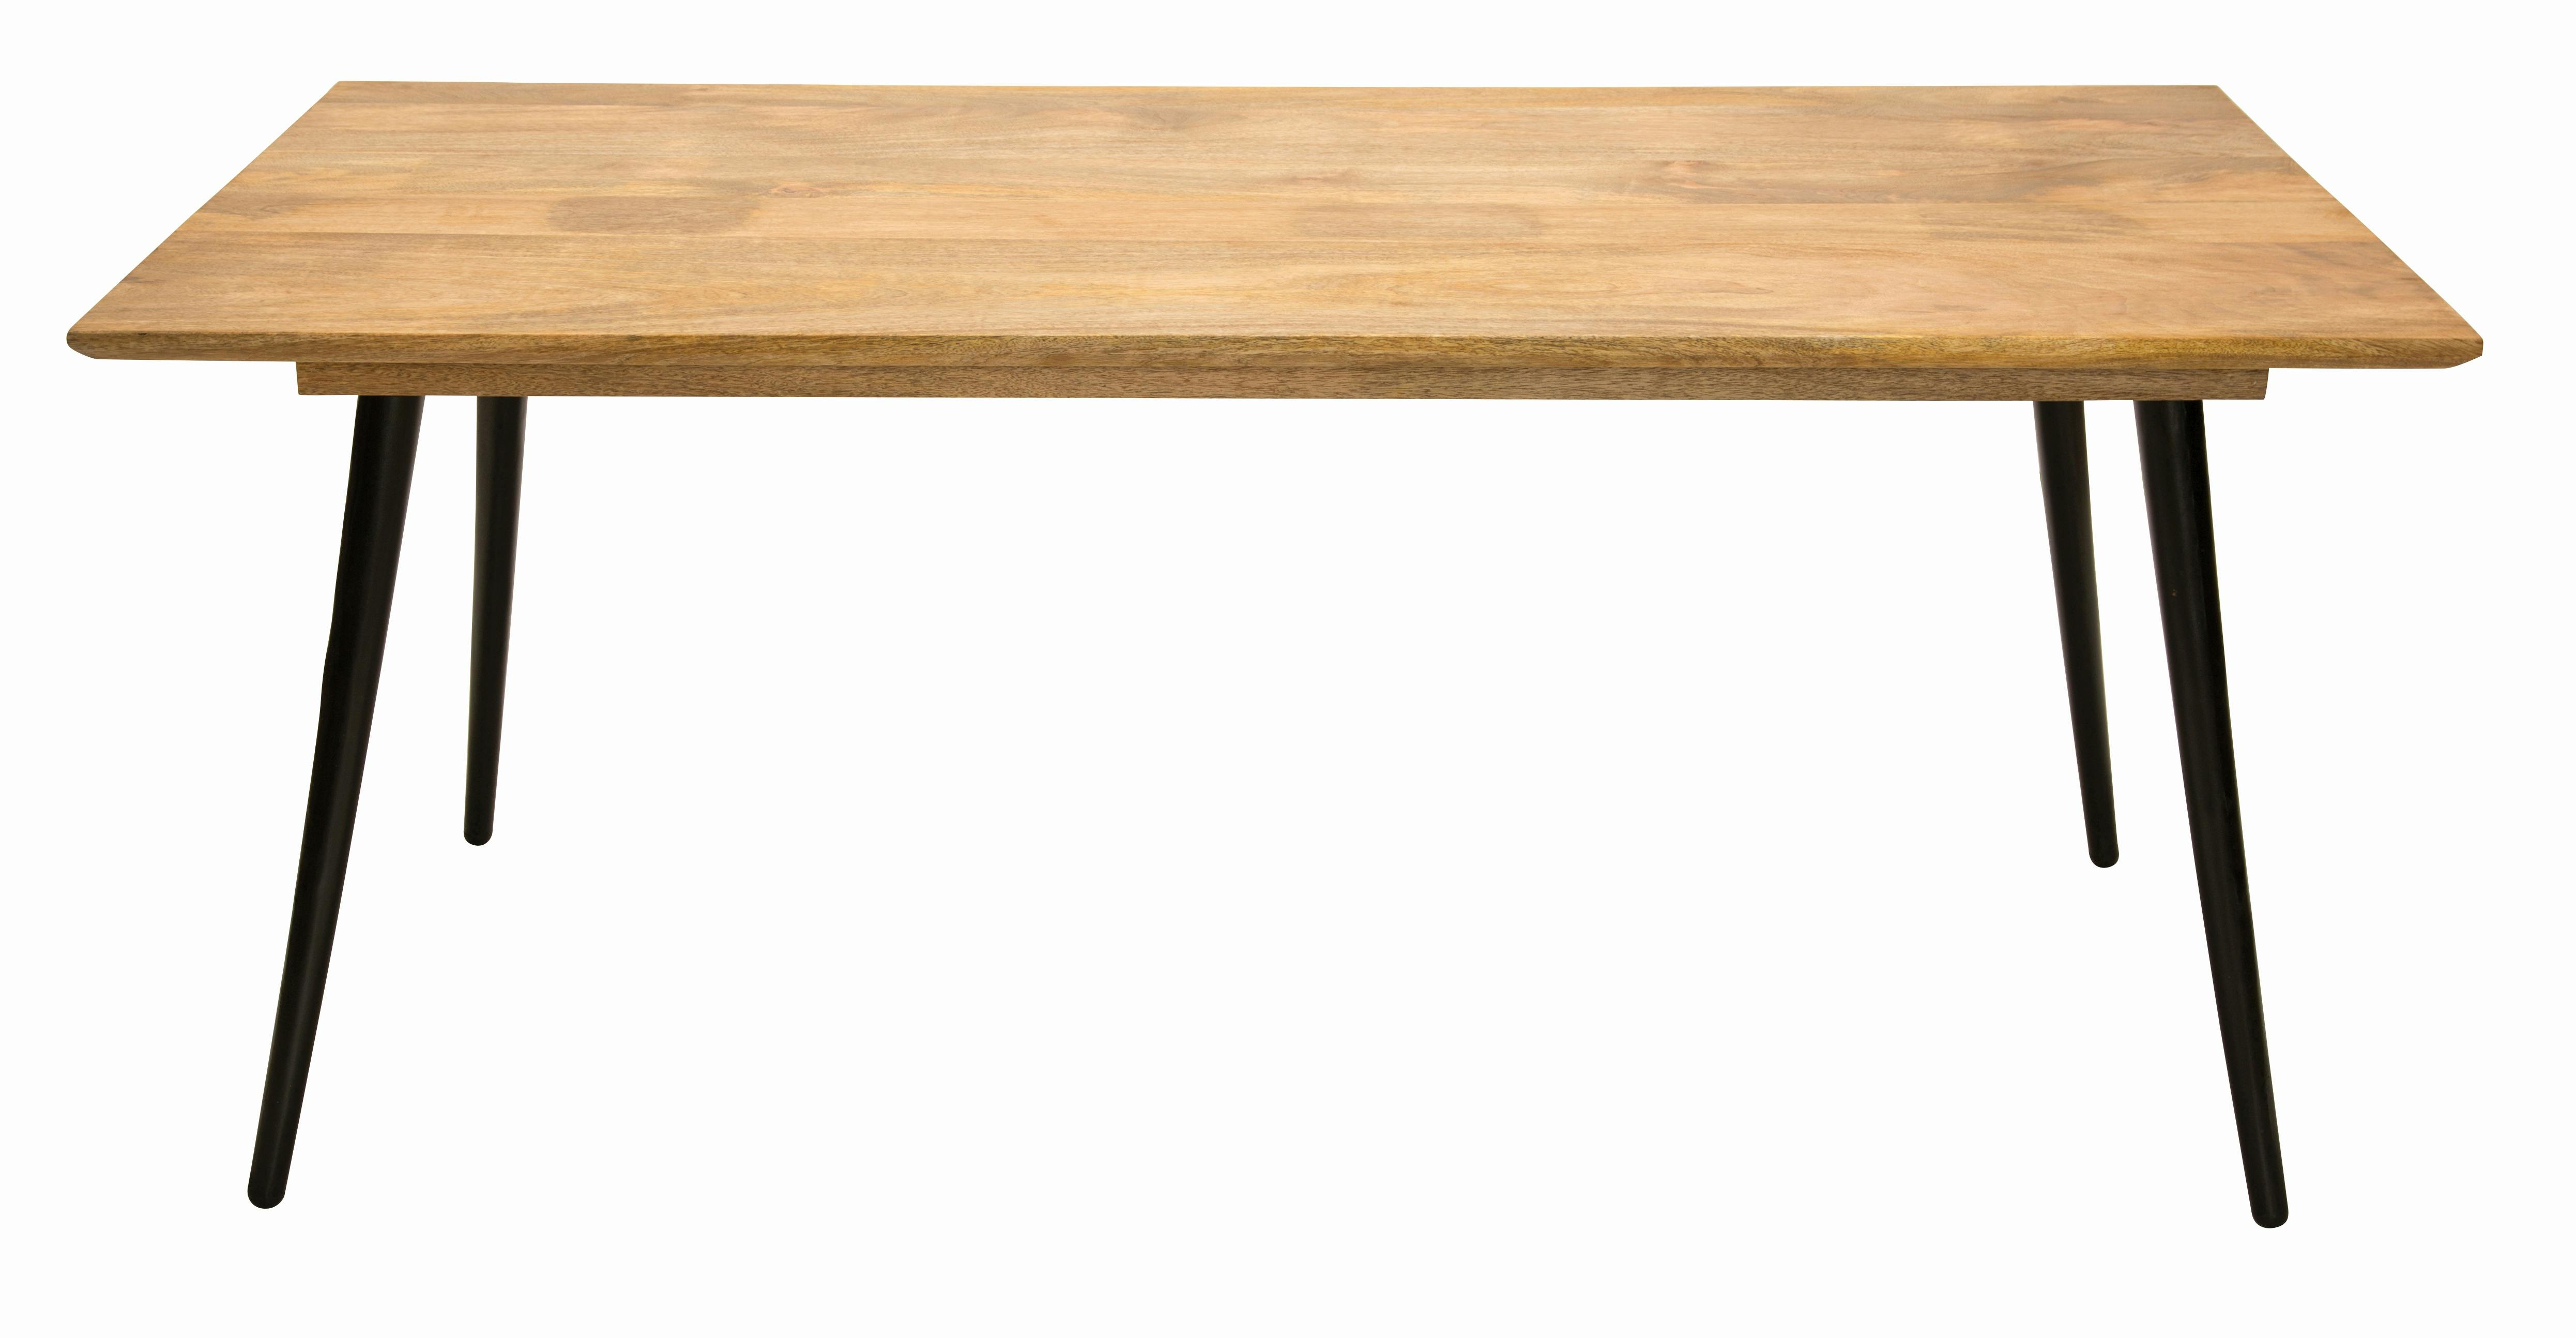 SIT Möbel Tisch Tom Tailor 90 Marktplatz | METRO T | 12817-01 180 TOM | Platte 77 | H x TAILOR Mangoholz 4 Serie B natur x cm | | | Metallbeine